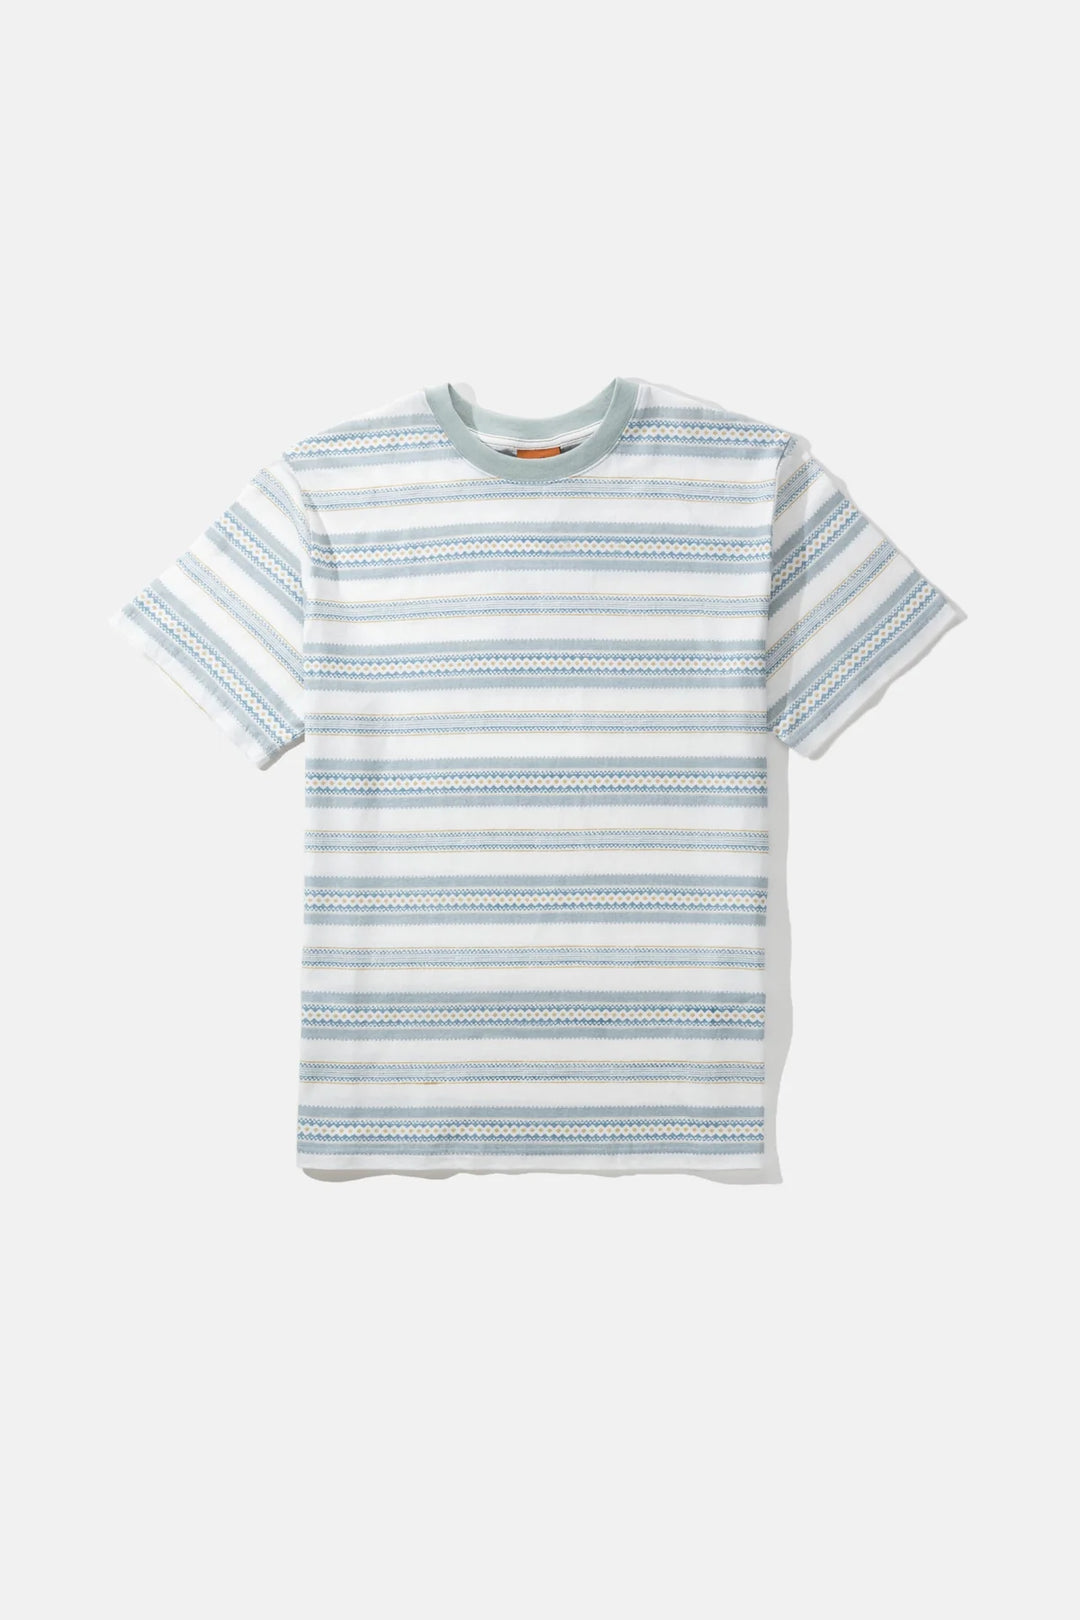 Rhythm Cairo Stripe Vintage Short Sleeve T-Shirt